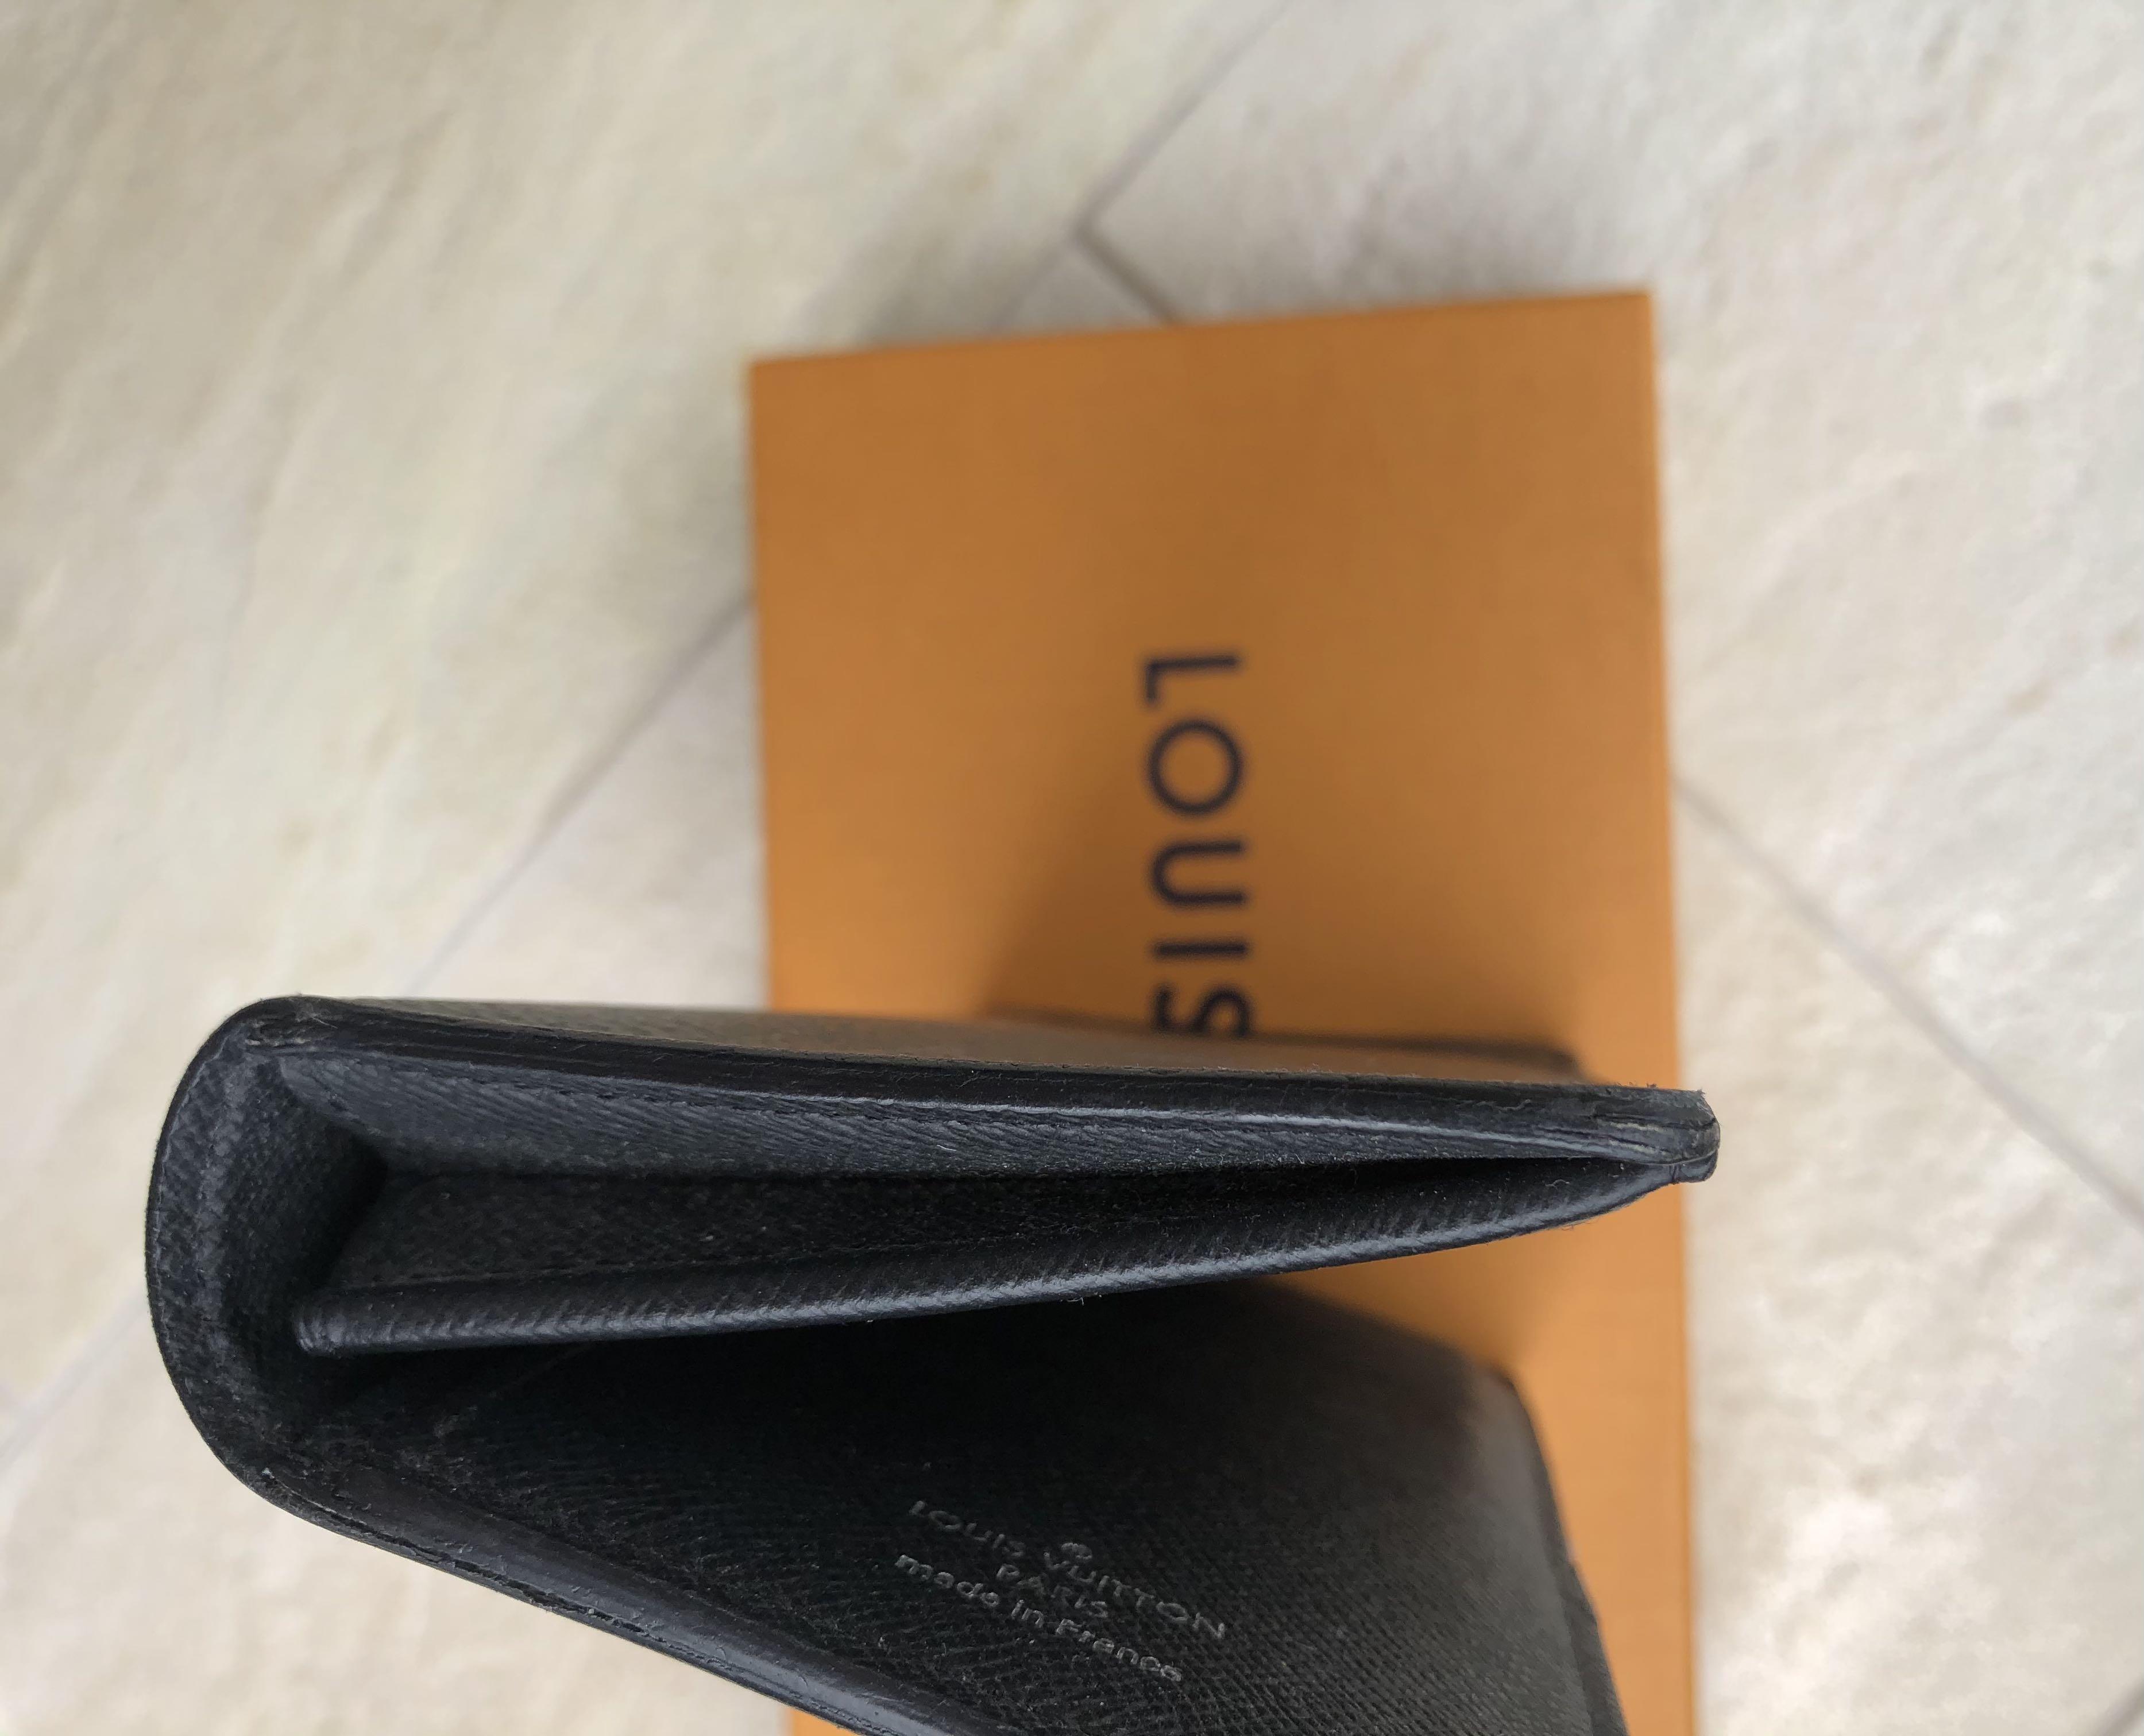 100% Original Louis Vuitton wallet on strap bubblegram schwarz